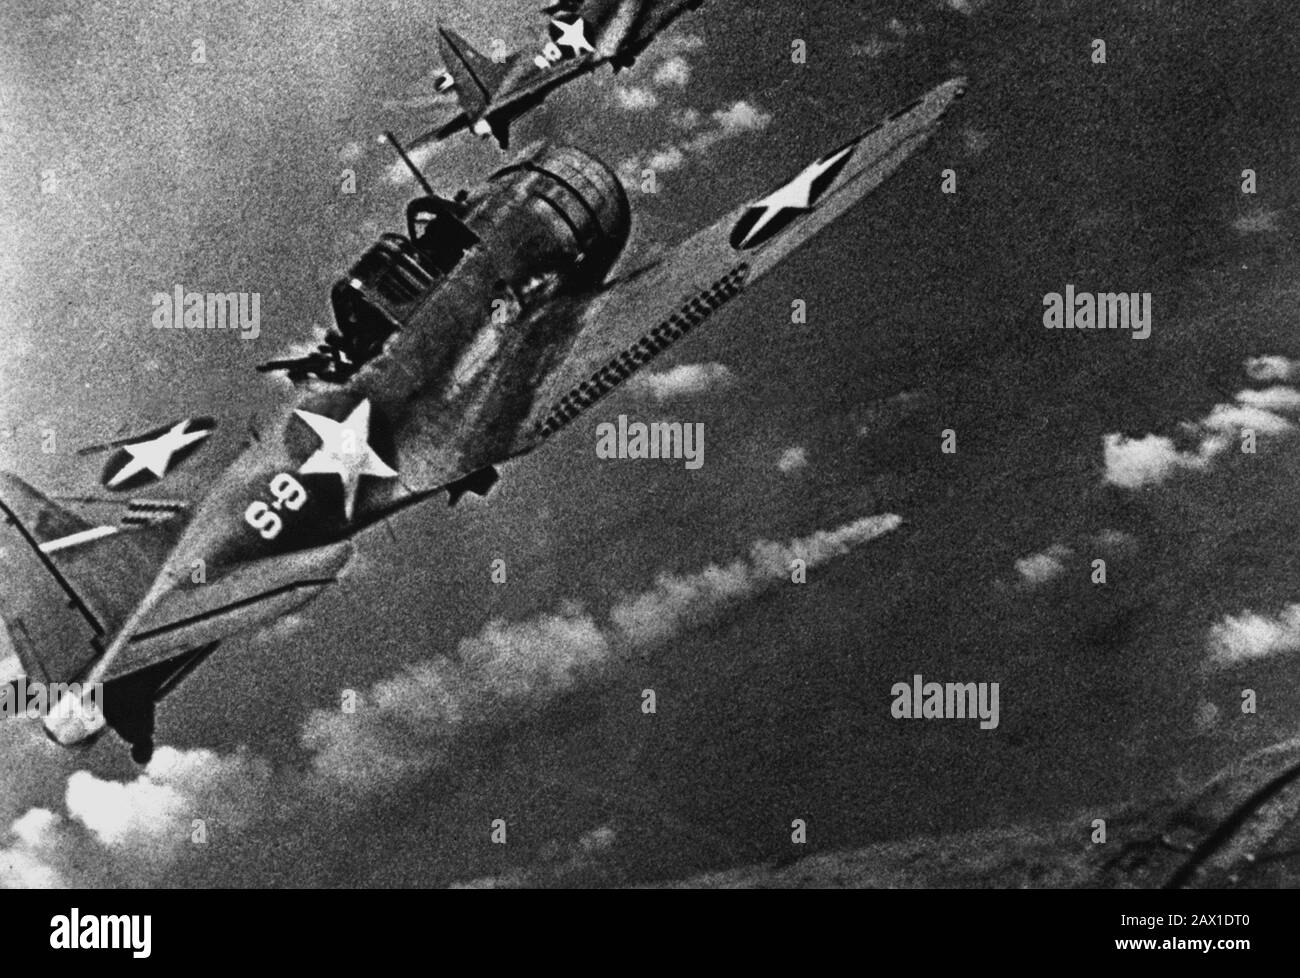 JUNI, USA: ZWISCHENKAMPF . Marinekämpfer während des Angriffs auf die japanische Flotte vor Midway vom 4. Bis 6. Juni 1942. Im Zentrum ist ein brennendes japanisches Schiff zu sehen. (Navy) Douglas SBD-3 "Dundless"-Sturzkampfbomber der US-Navy aus dem Pfadfindergeschwader VS-8 des Flugzeugträgers USS Hornet (CV-8), der sich dem brennenden japanischen schweren Kreuzergeschwader MIKUMA nähert, um während der Schlacht um Midway, 6. Juni 1942, den dritten Angriffssatz auf sie zu machen. Mikuma war zuvor von Streiks von Hornet und USS Enterprise (CV-6) getroffen worden, ließ sie tot im Wasser liegen und tödlich verunglückte. Beachten Sie, dass Bomben unter t hängen Stockfoto